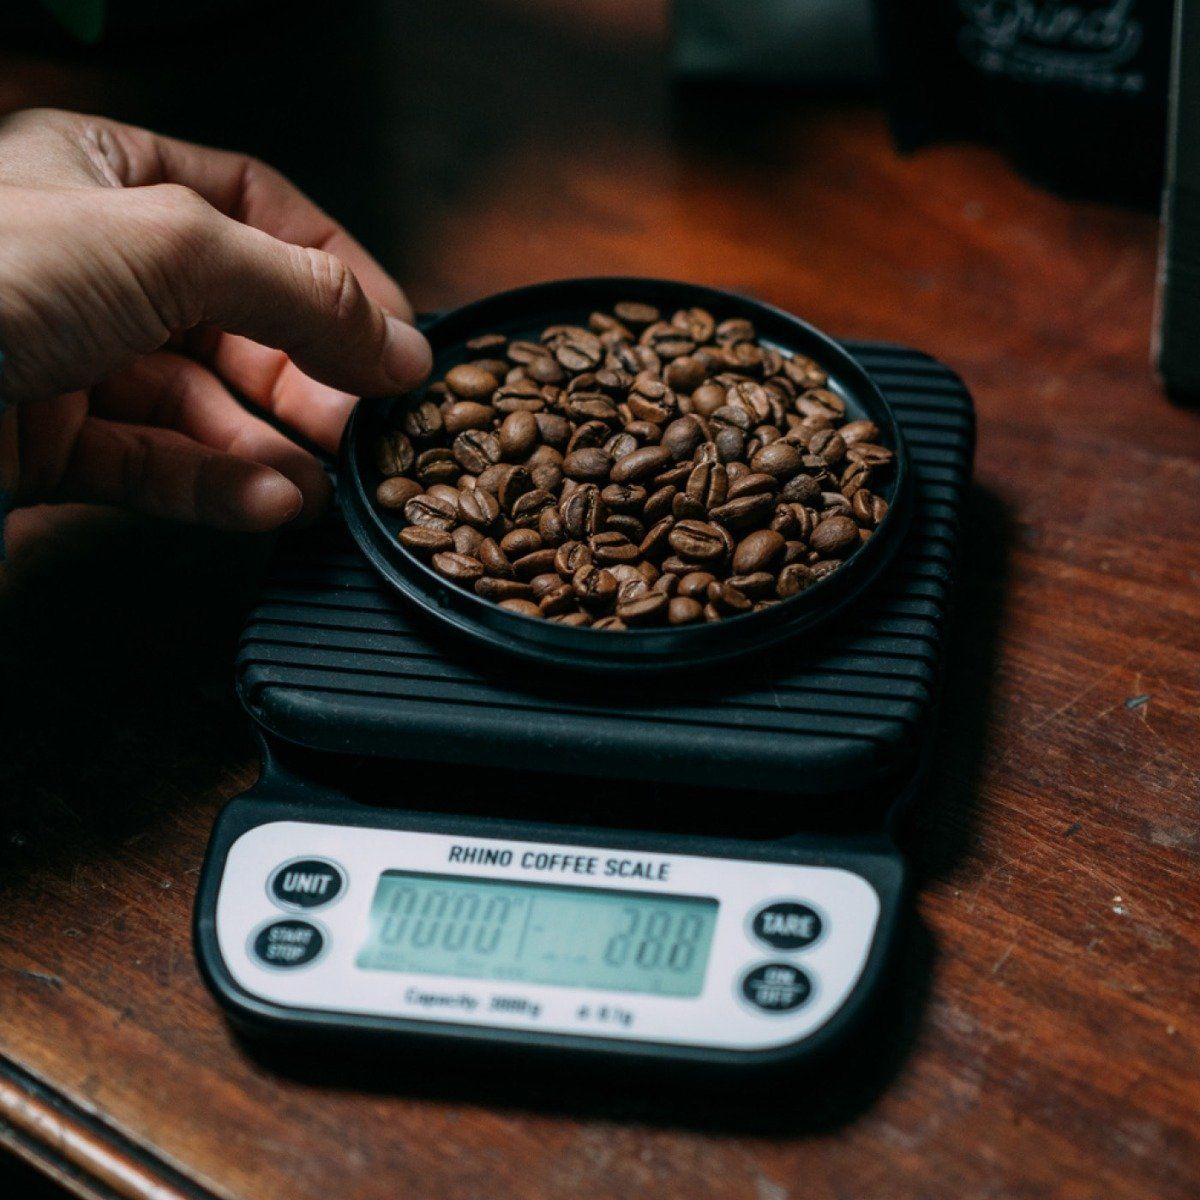 Rhino Coffee Gear 3kg Brewing Coffee Scale